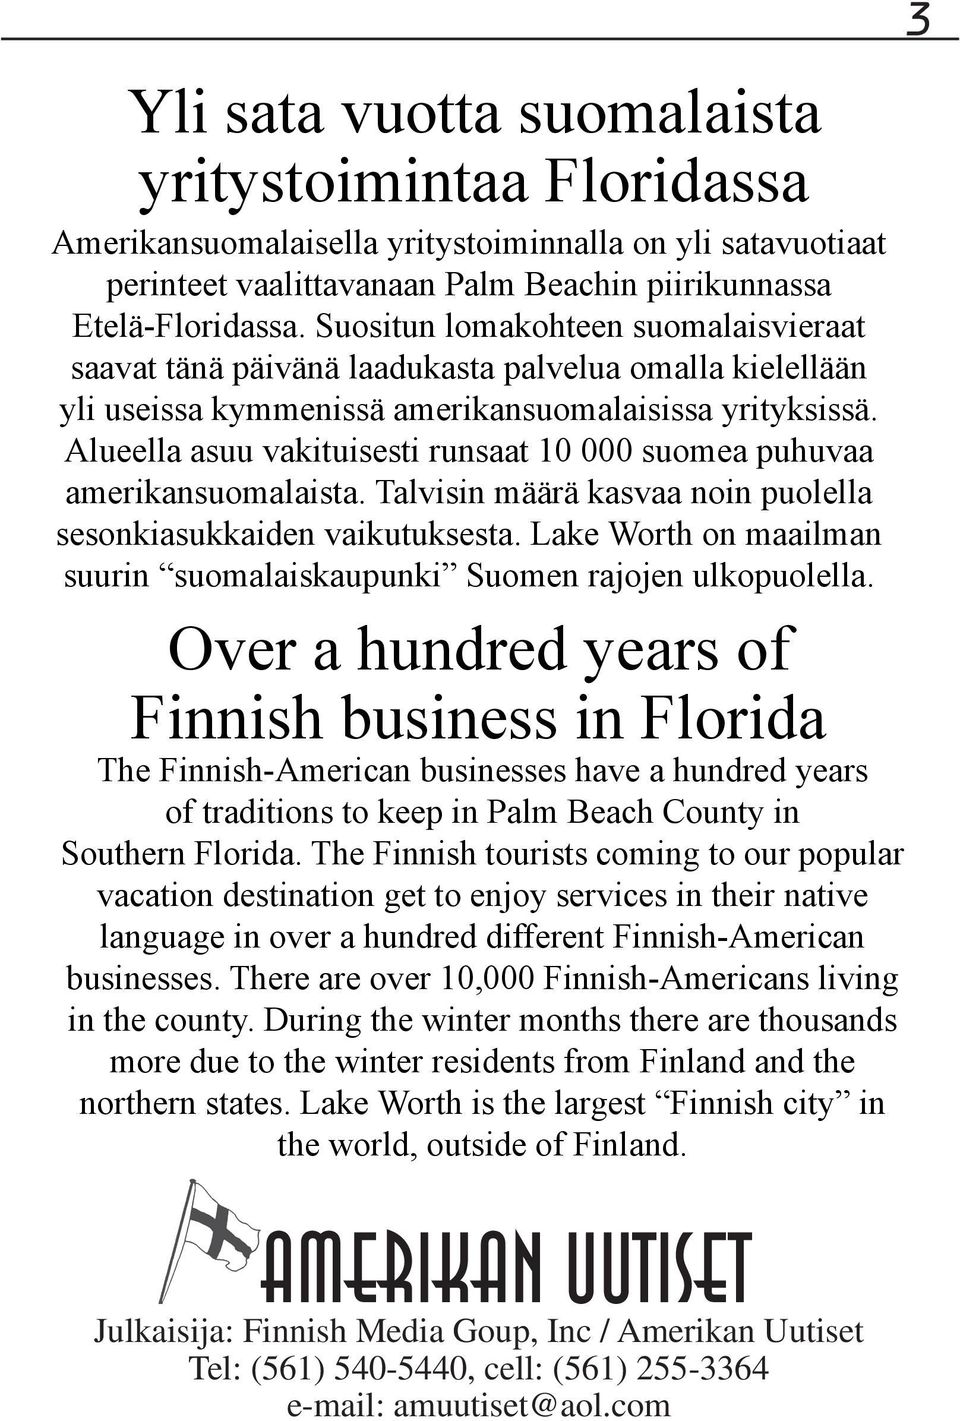 Alueella asuu vakituisesti runsaat 10 000 suomea puhuvaa amerikansuomalaista. Talvisin määrä kasvaa noin puolella sesonkiasukkaiden vaikutuksesta.